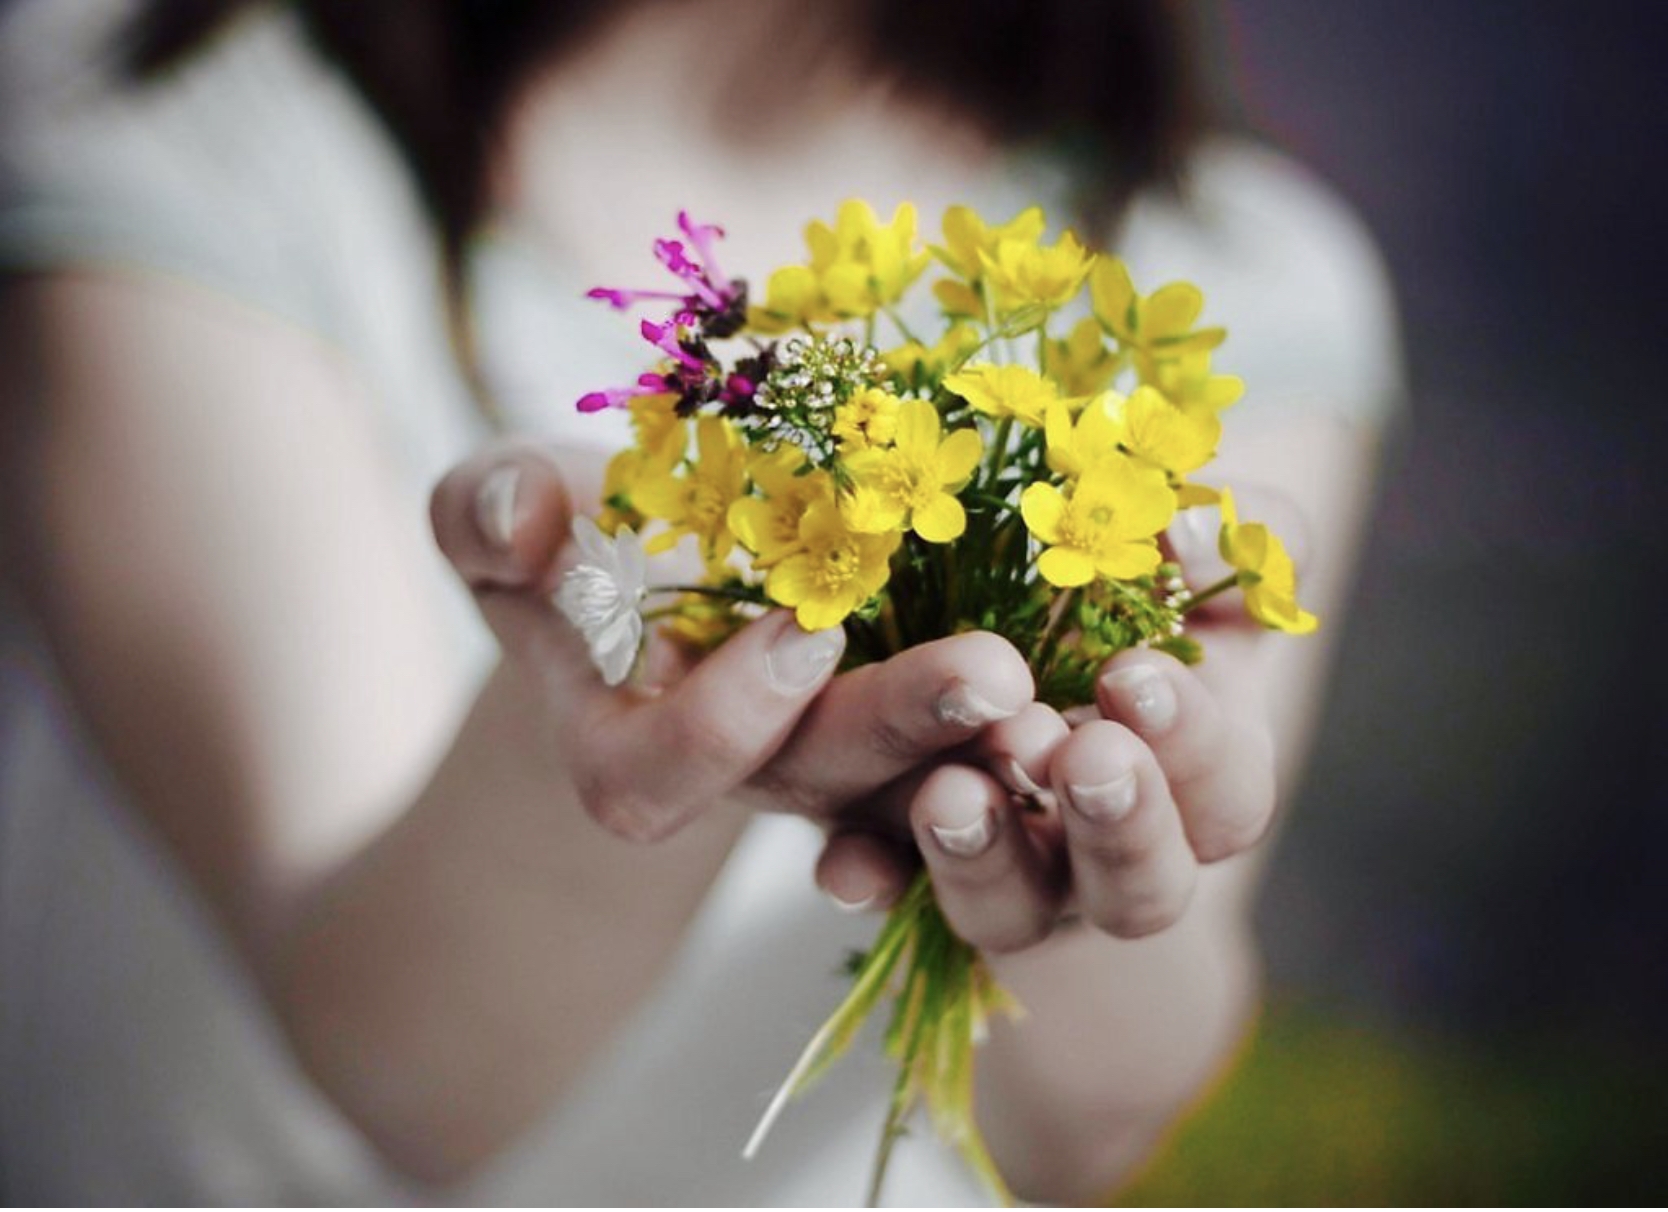 Песня какой хороший день чтобы подарить цветов. Букет в руках. Цветок радости и счастья. Мелкие радости жизни. Букетик цветов в руке.